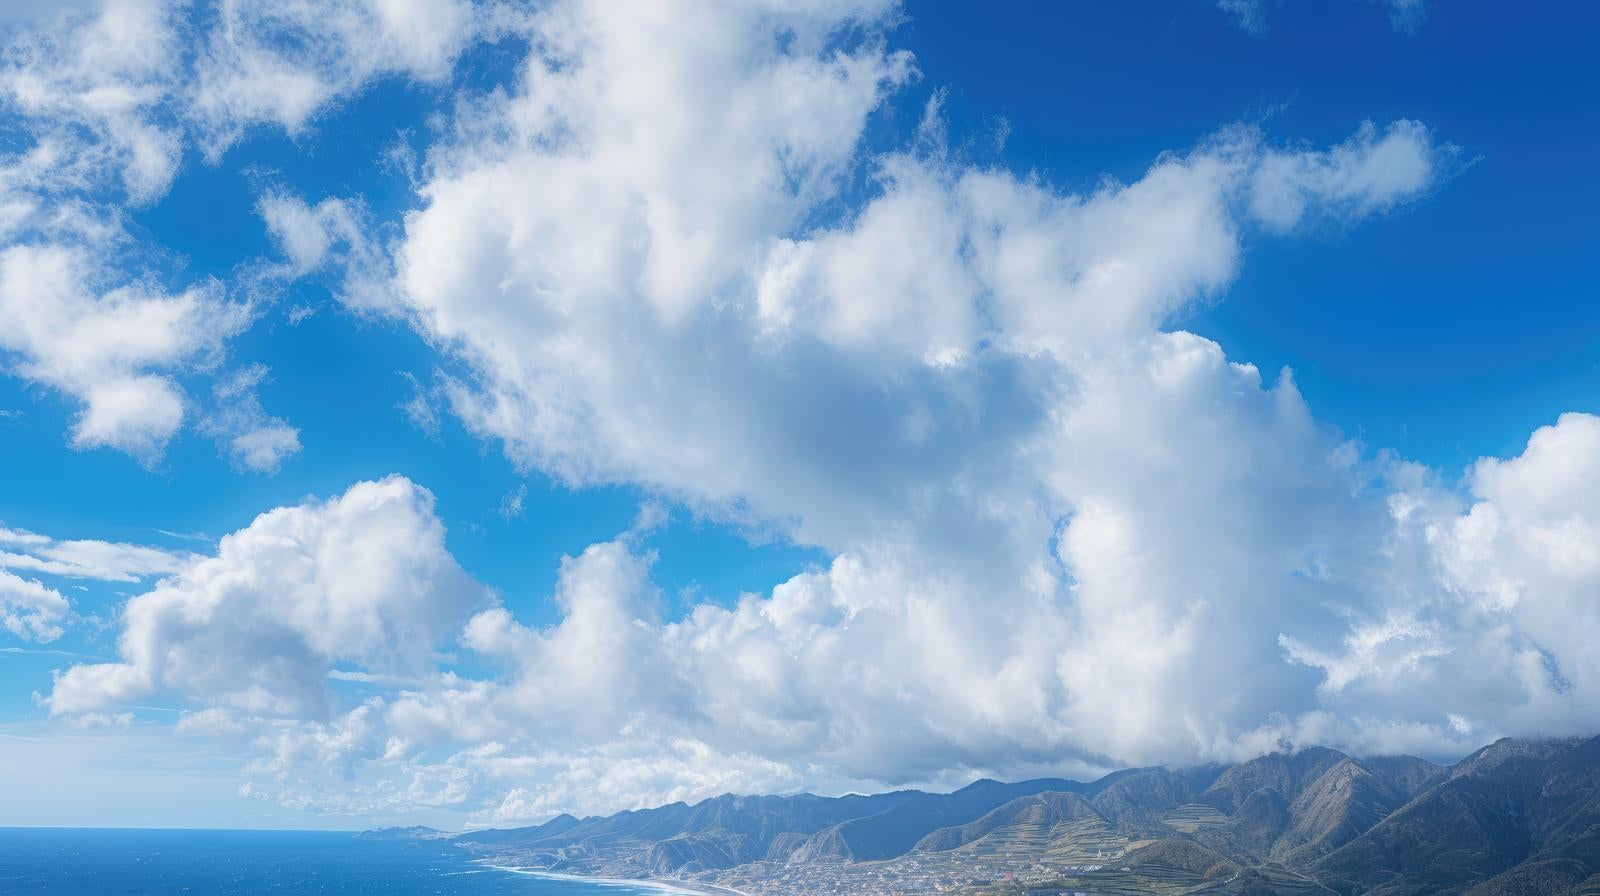 「島の上に停滞する入道雲」の写真